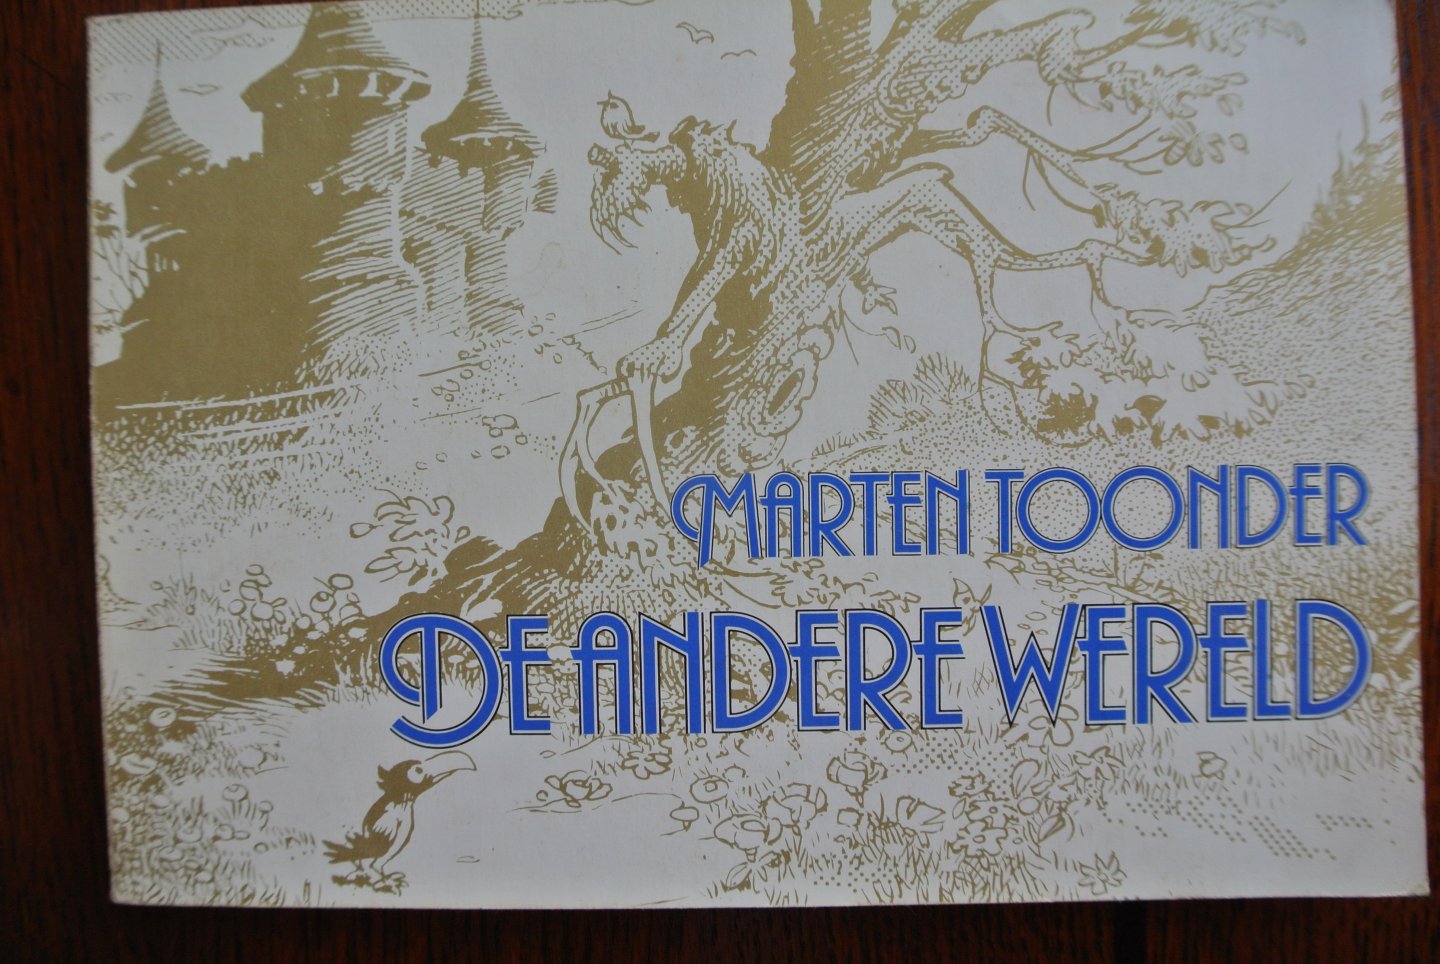 Toonder, Marten - DE ANDERE WERELD